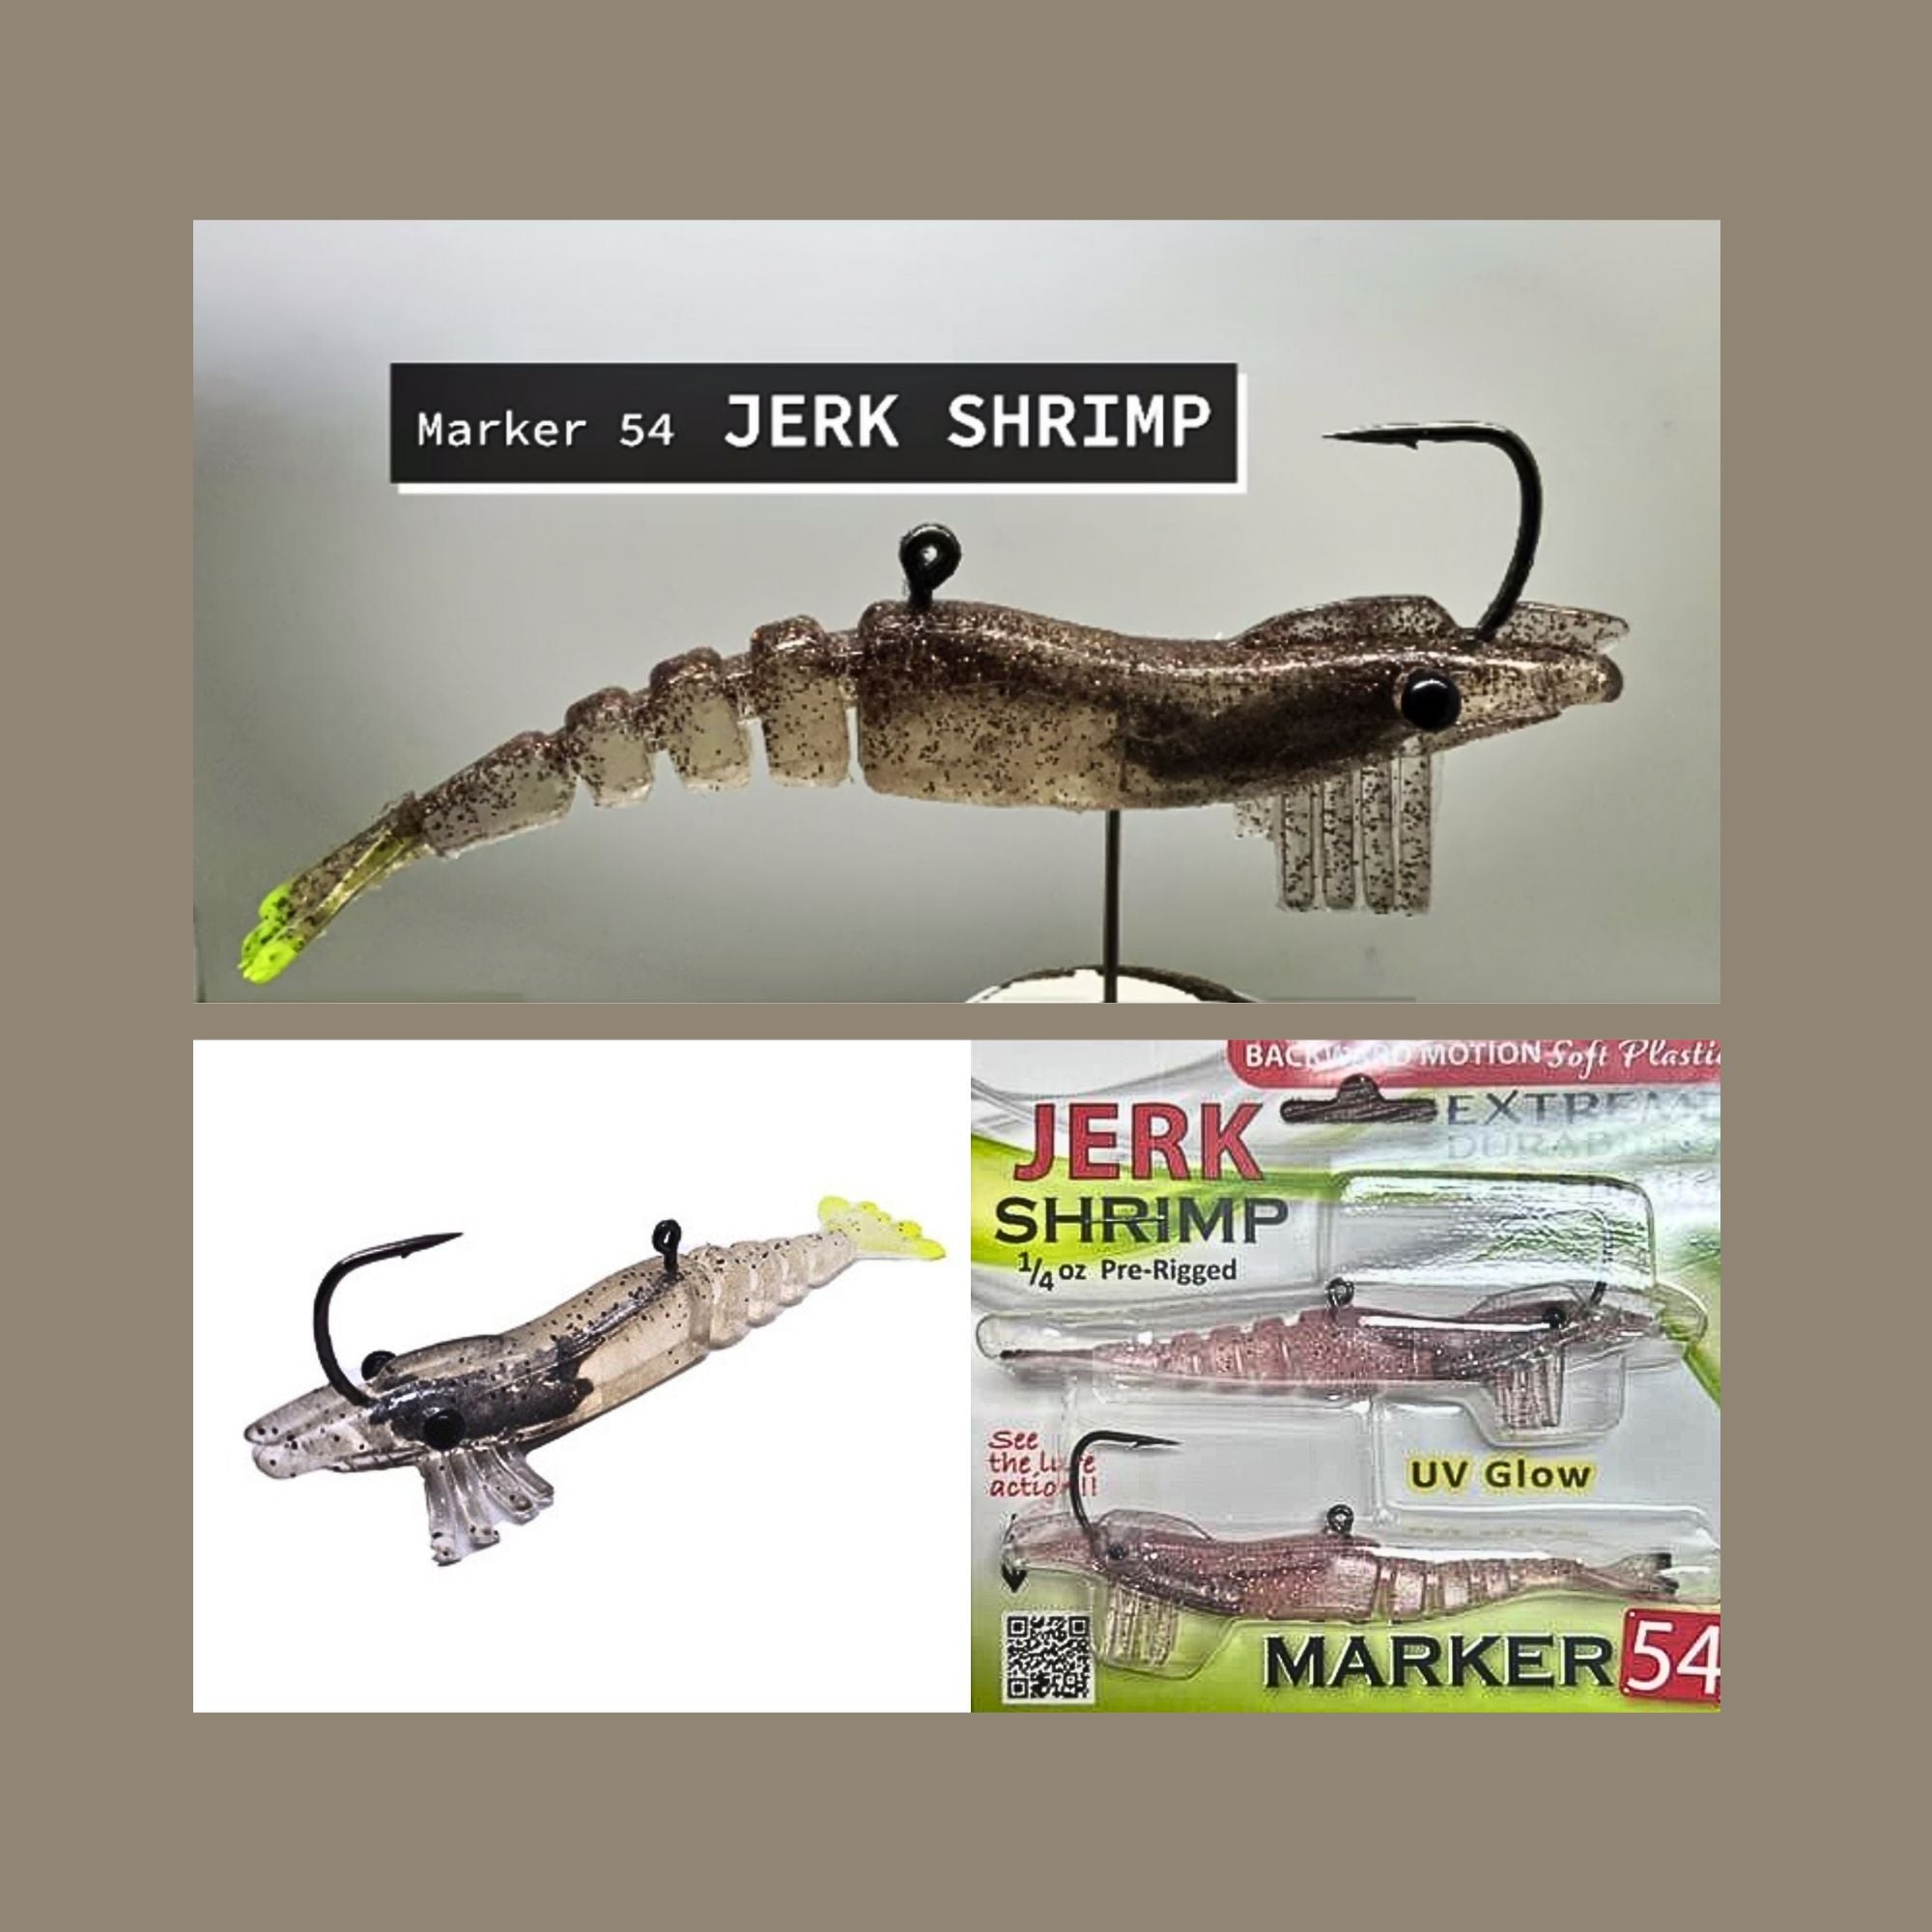 Jerk Shrimp, Marker 54, Jerk Prawn, Plastic Lure